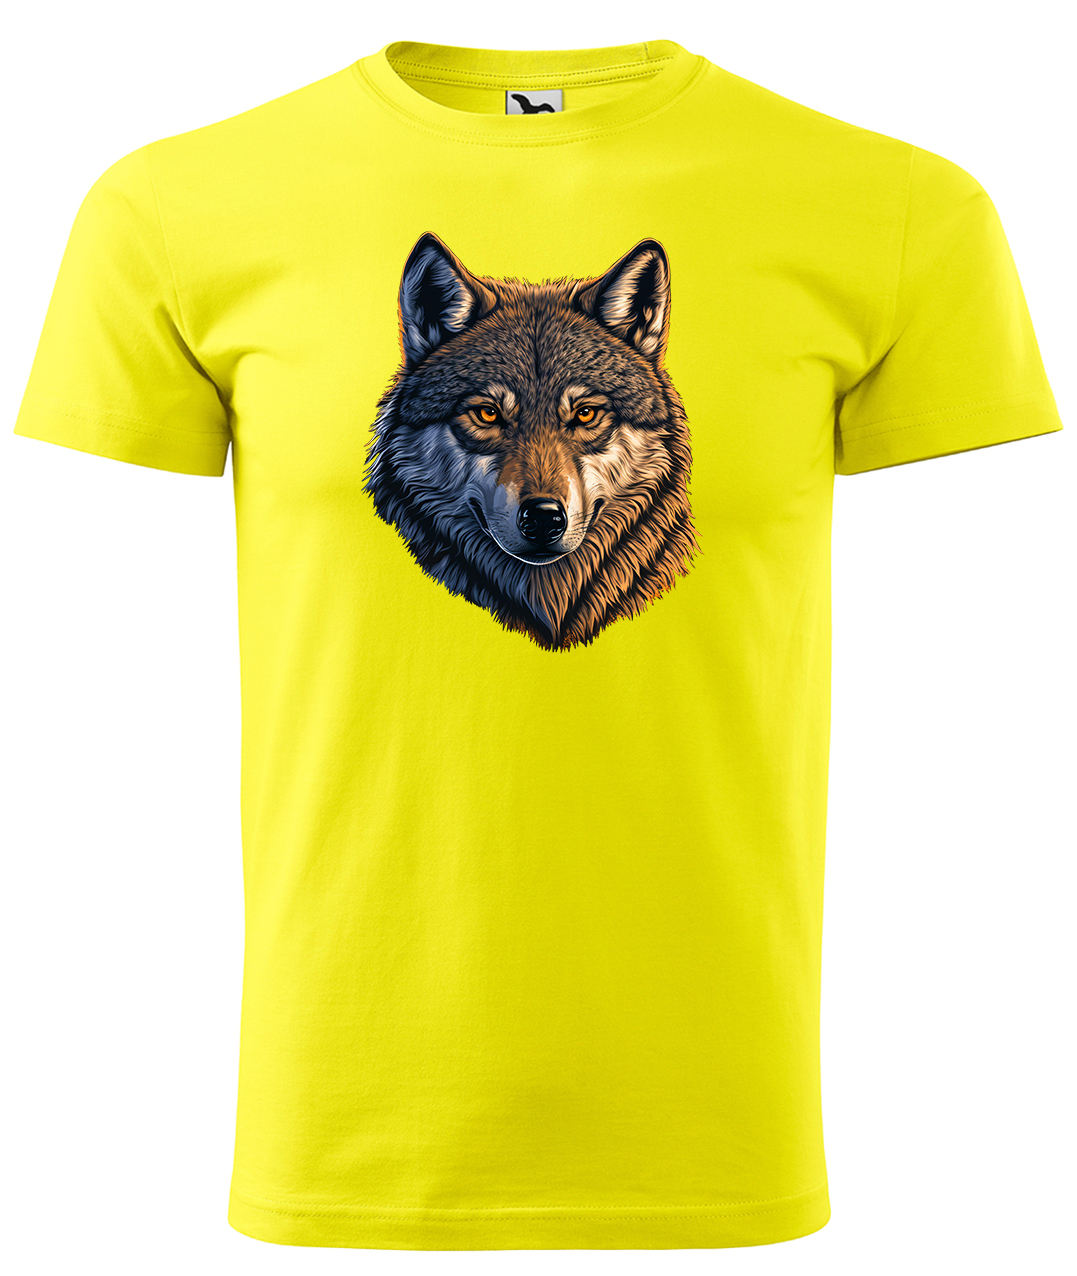 Dětské tričko s vlkem - Hlava vlka Velikost: 10 let / 146 cm, Barva: Žlutá (04), Délka rukávu: Krátký rukáv